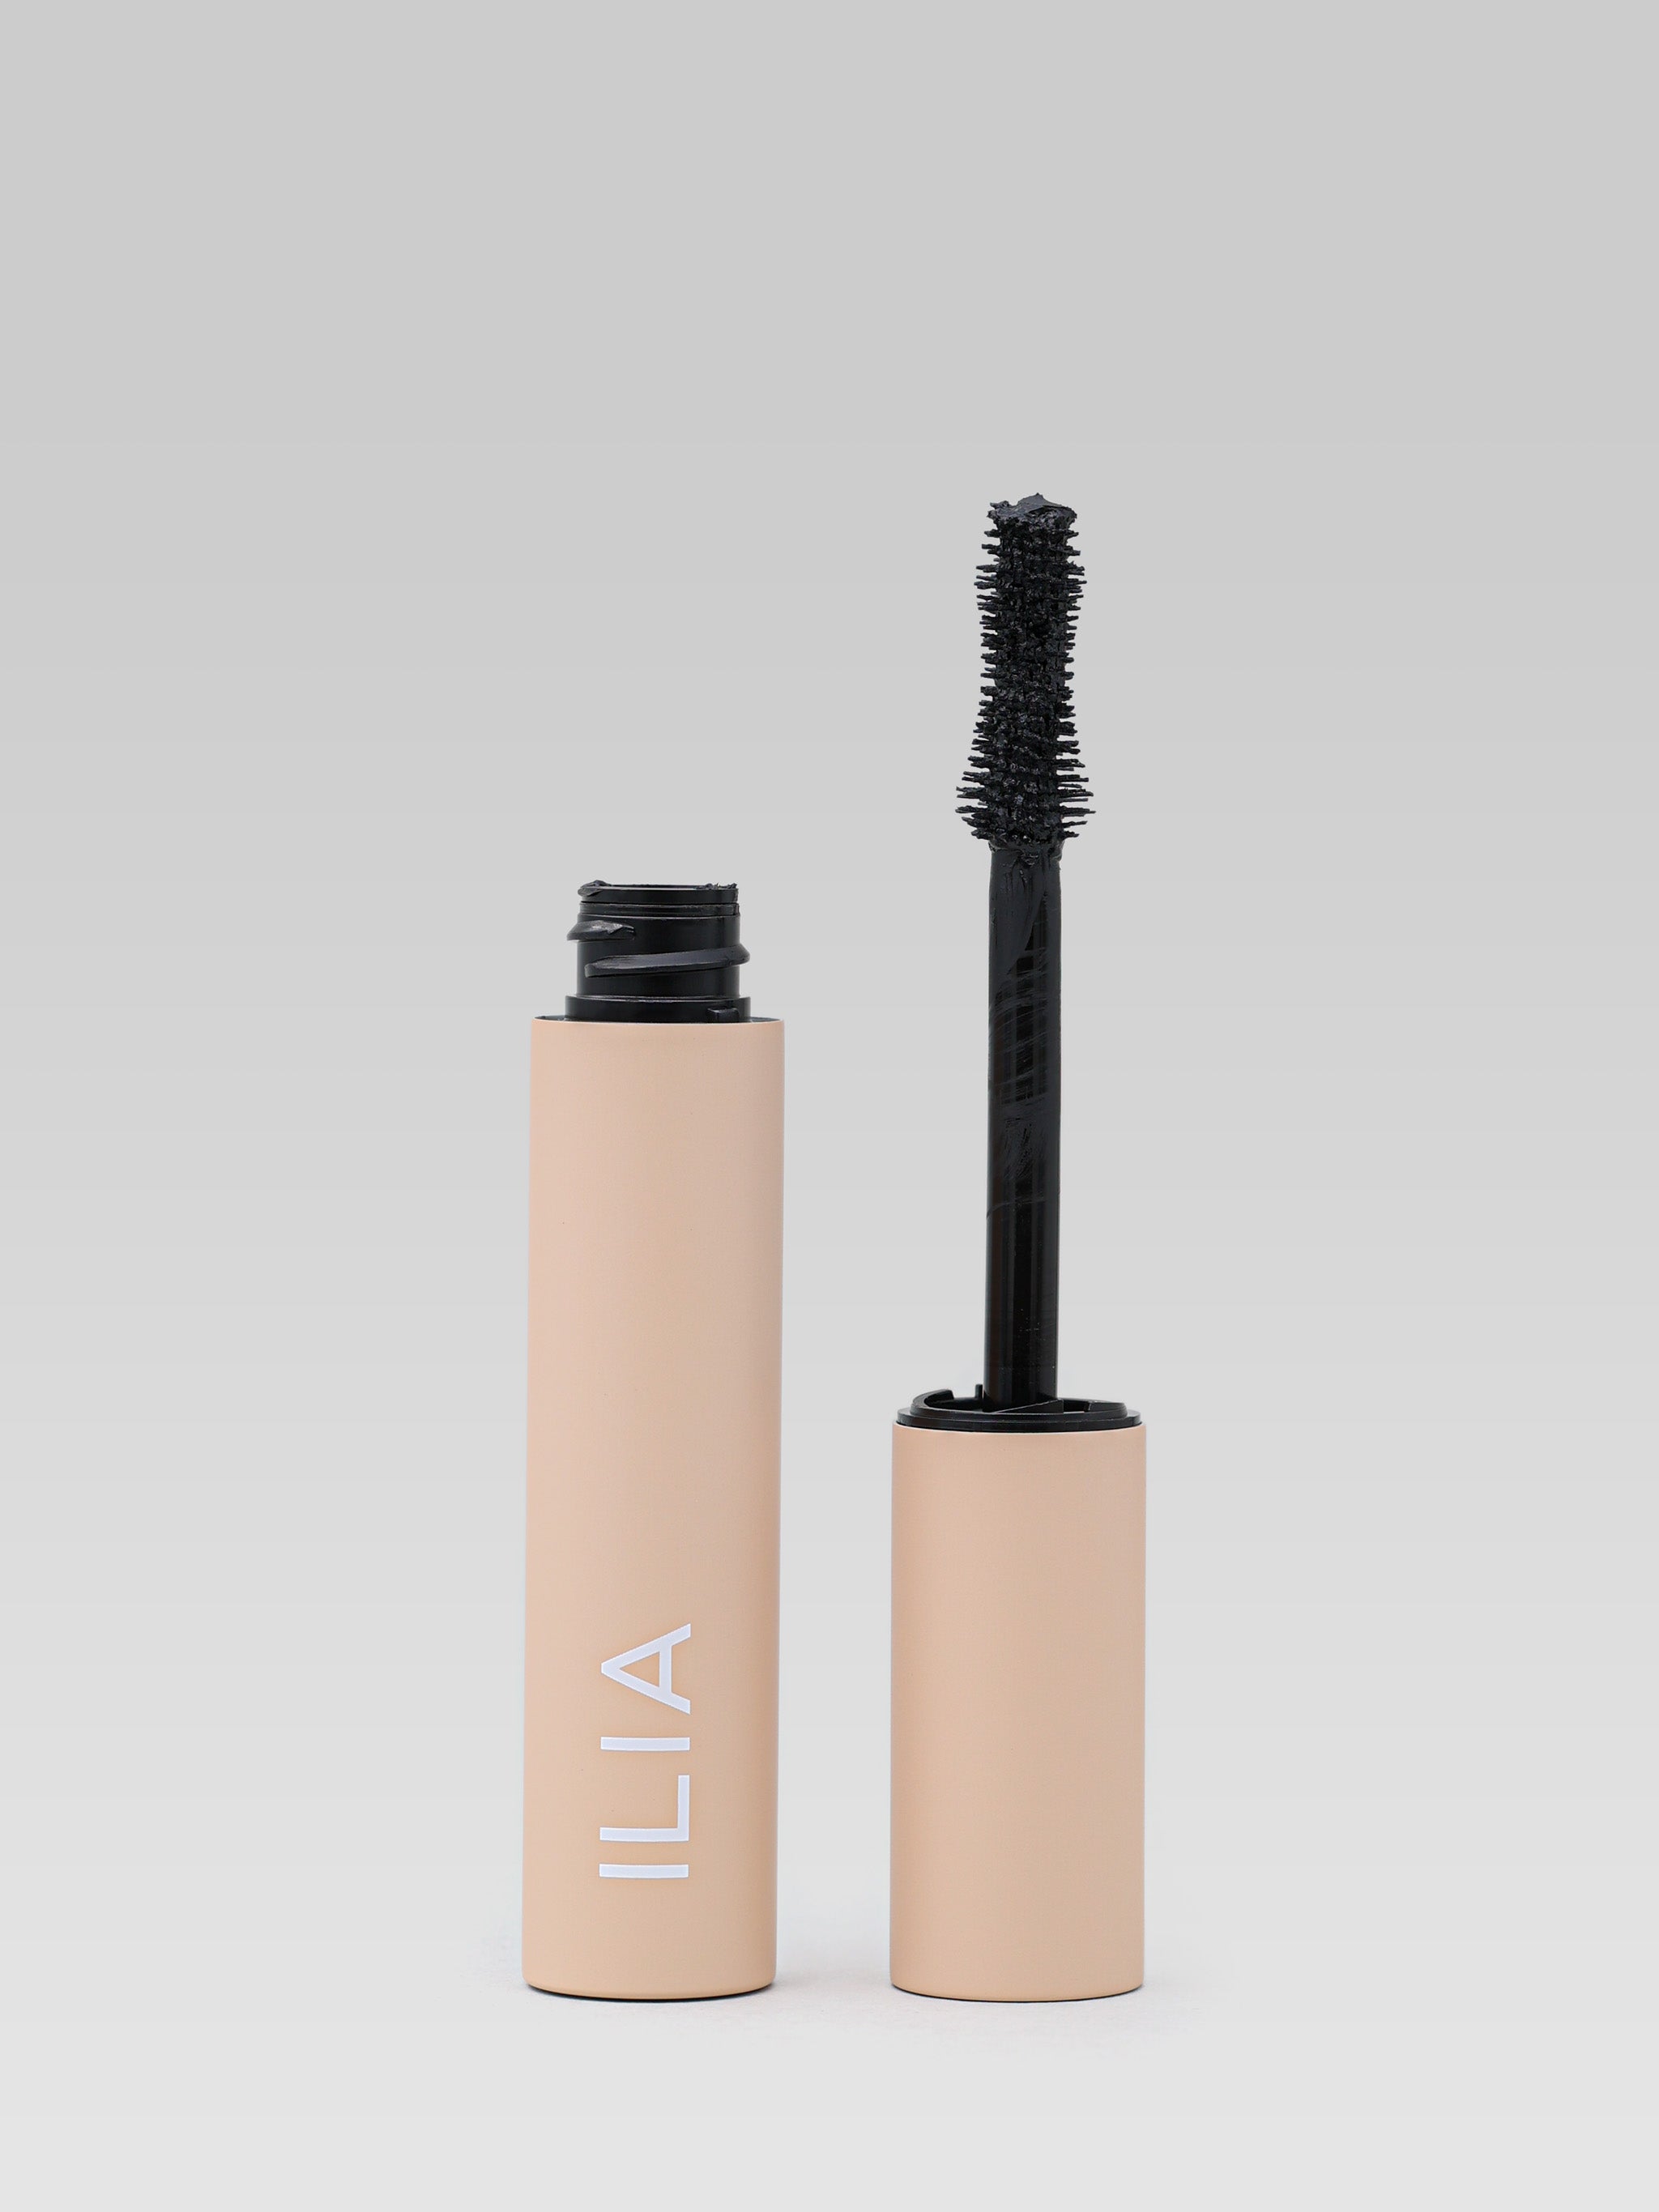 ILIA BEAUTY Fullest Volumizing Mascara product shot 